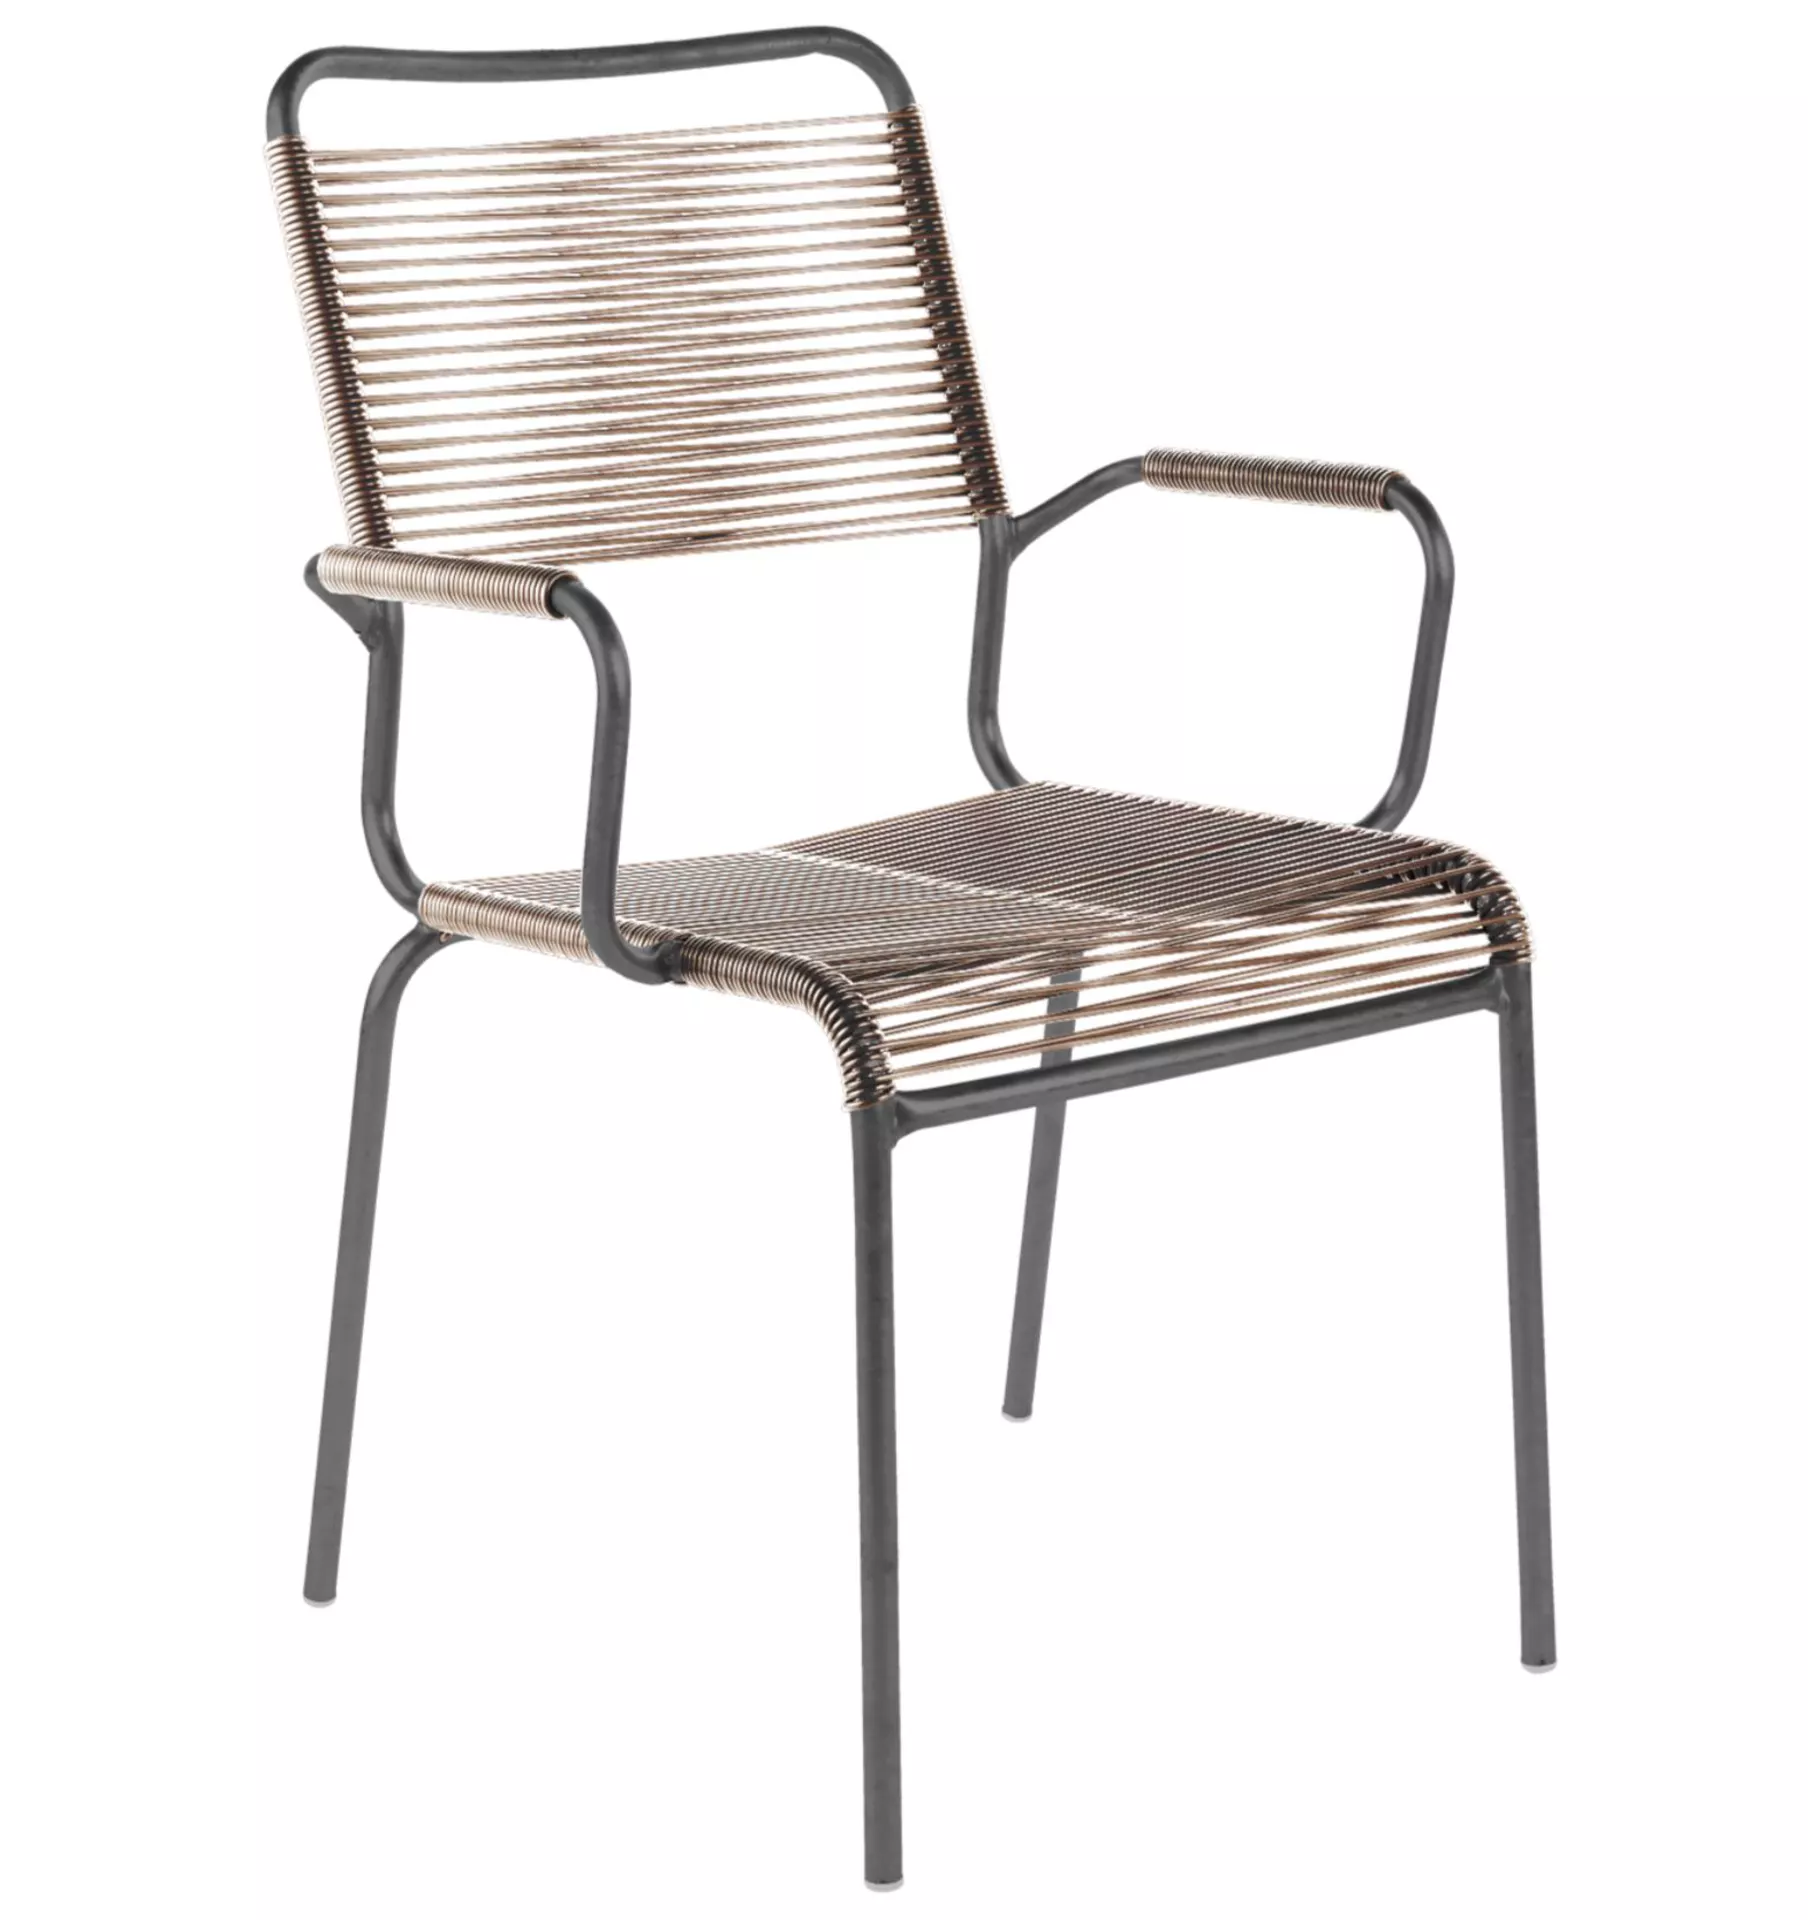 Spaghetti-Stuhl Rigi mit Armlehnen Schaffner / Farbe: Brauntransparent